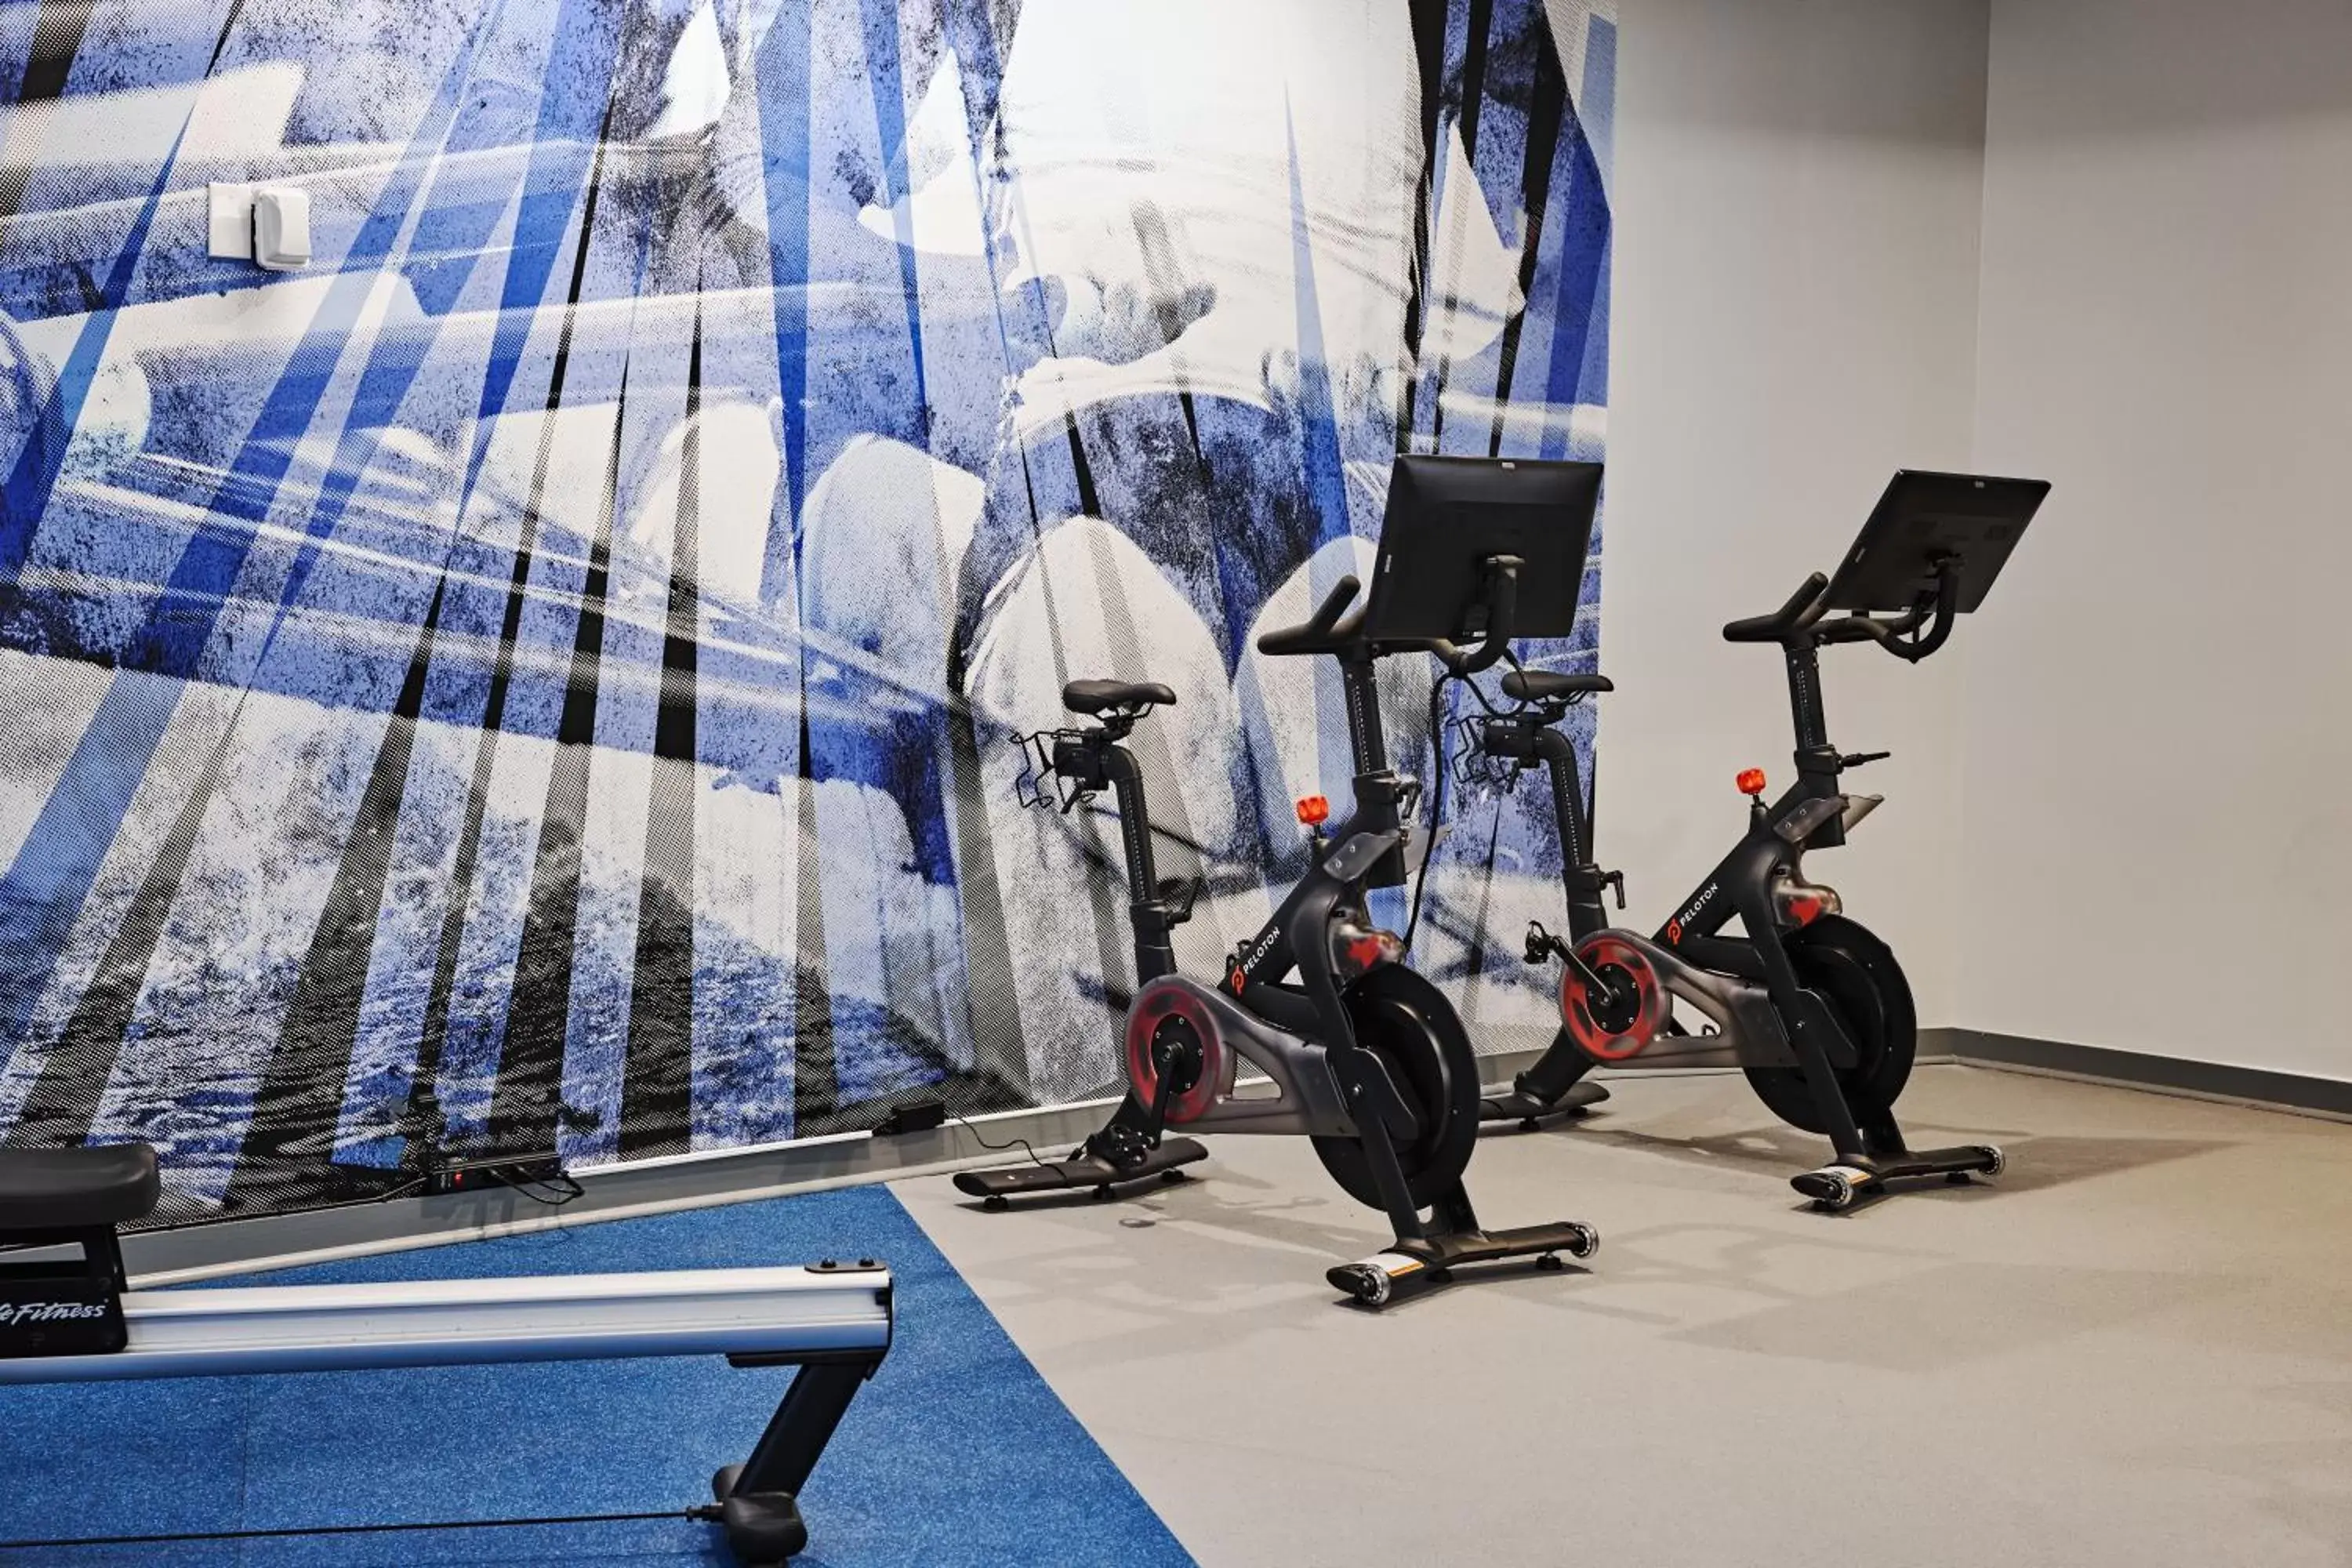 Fitness centre/facilities, Fitness Center/Facilities in Hyatt Regency Boston/Cambridge